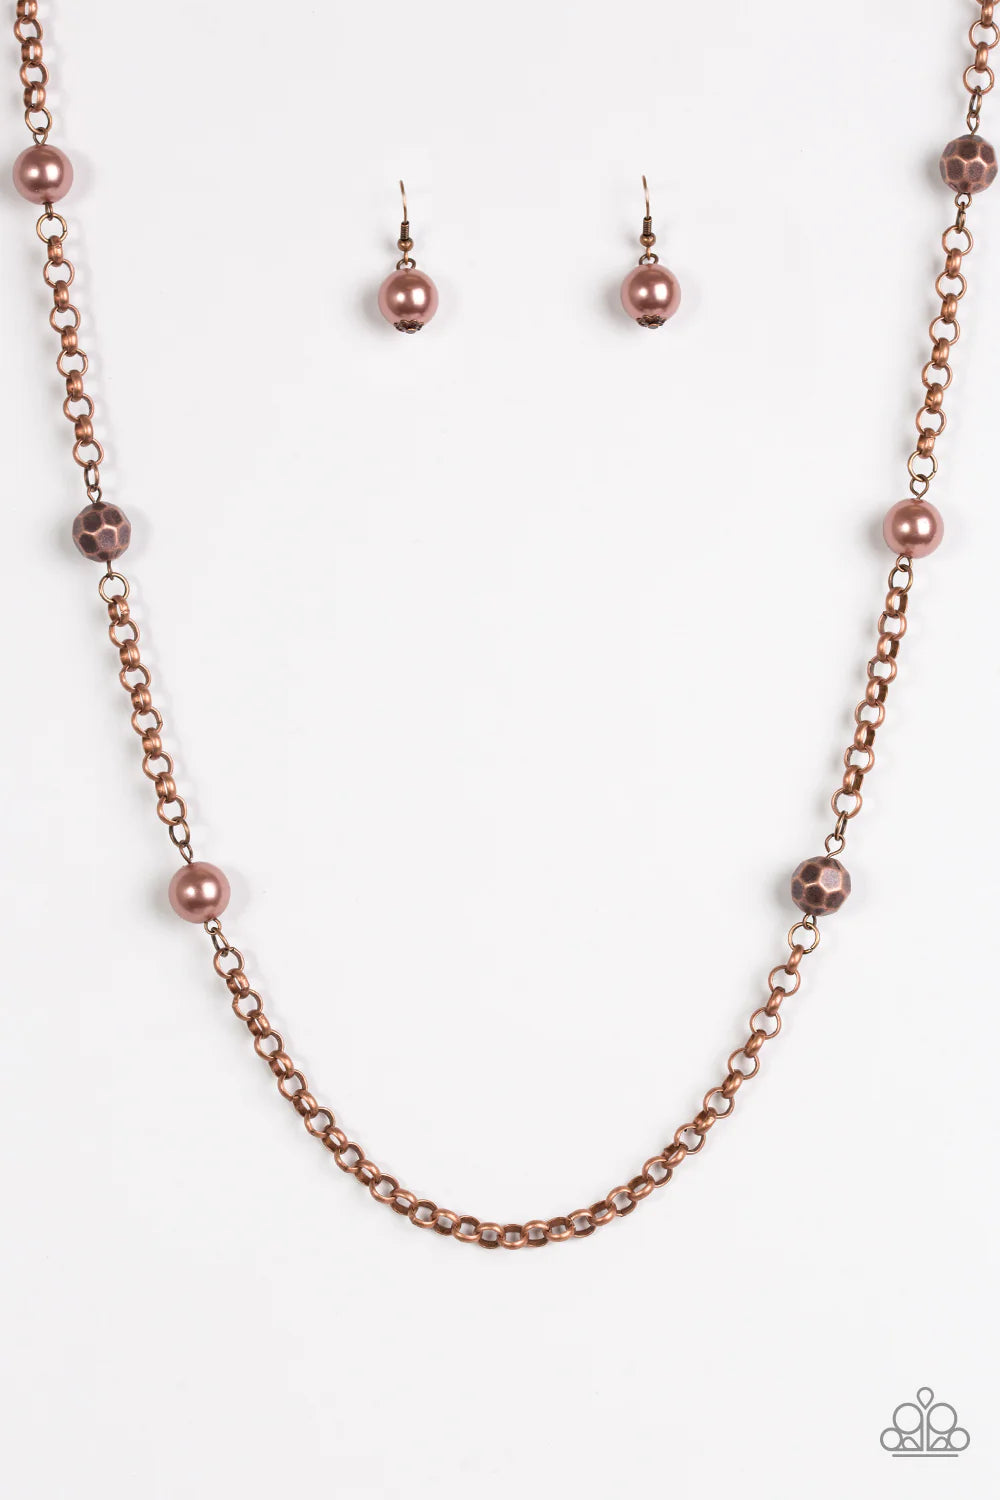 Showroom Shimmer Copper Necklace